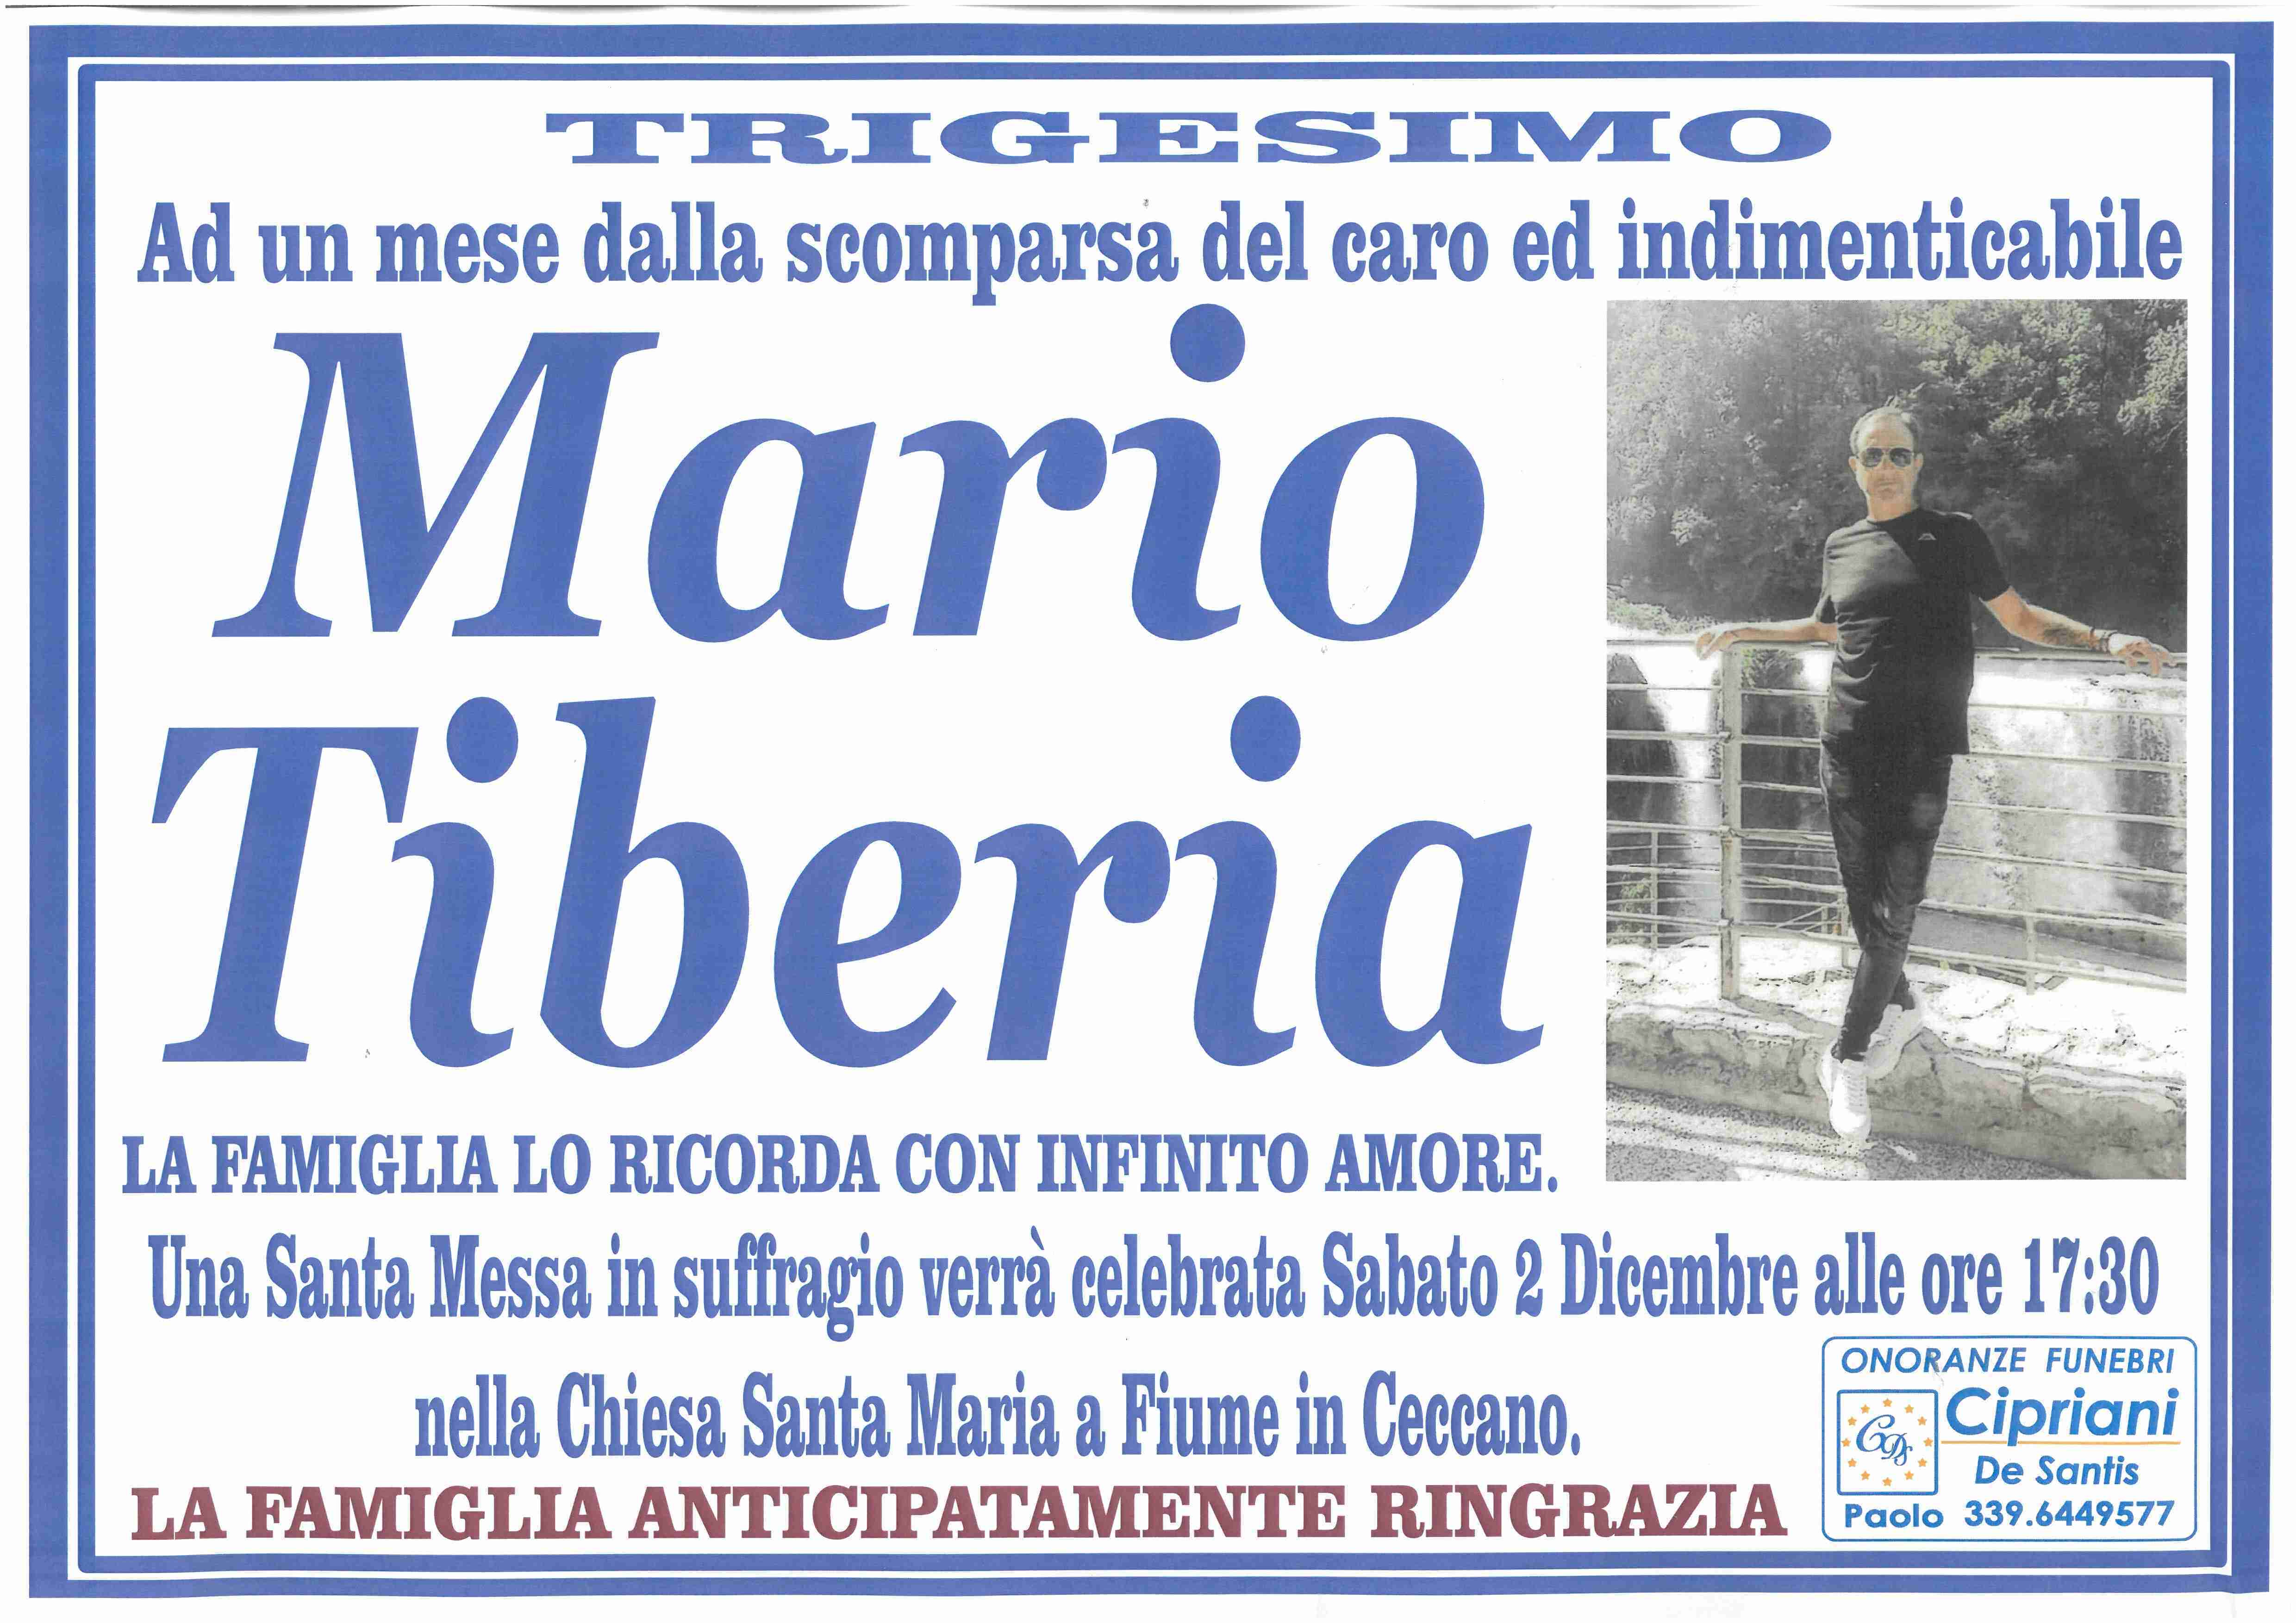 Mario Tiberia